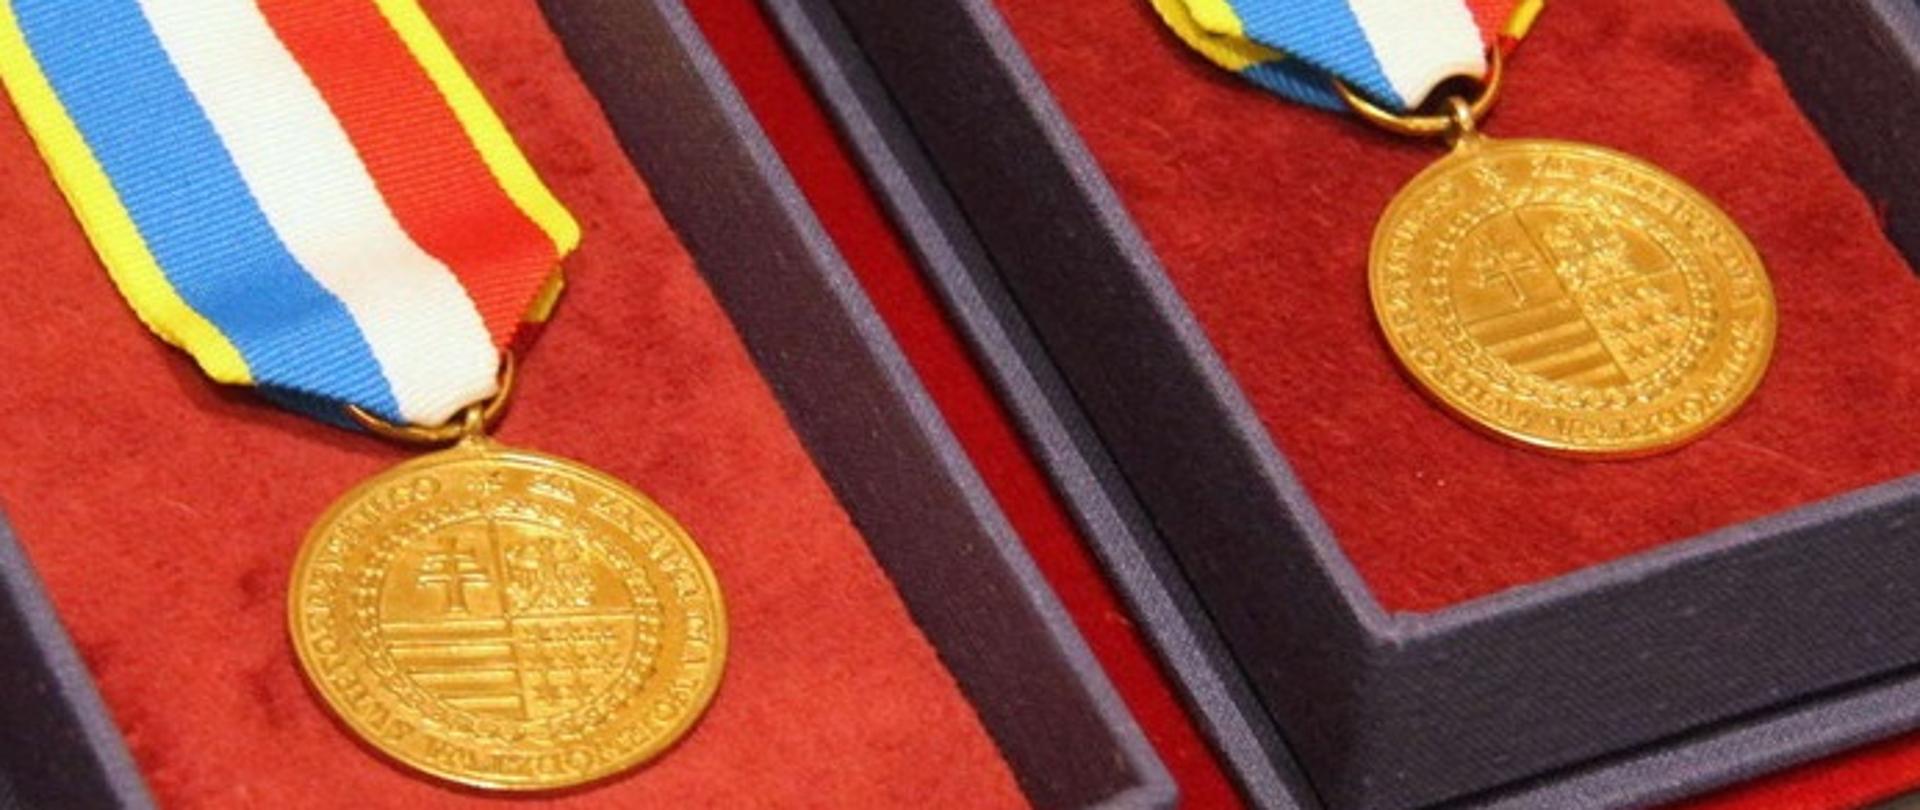 Odznaka honorowa województwa świętokrzyskiego